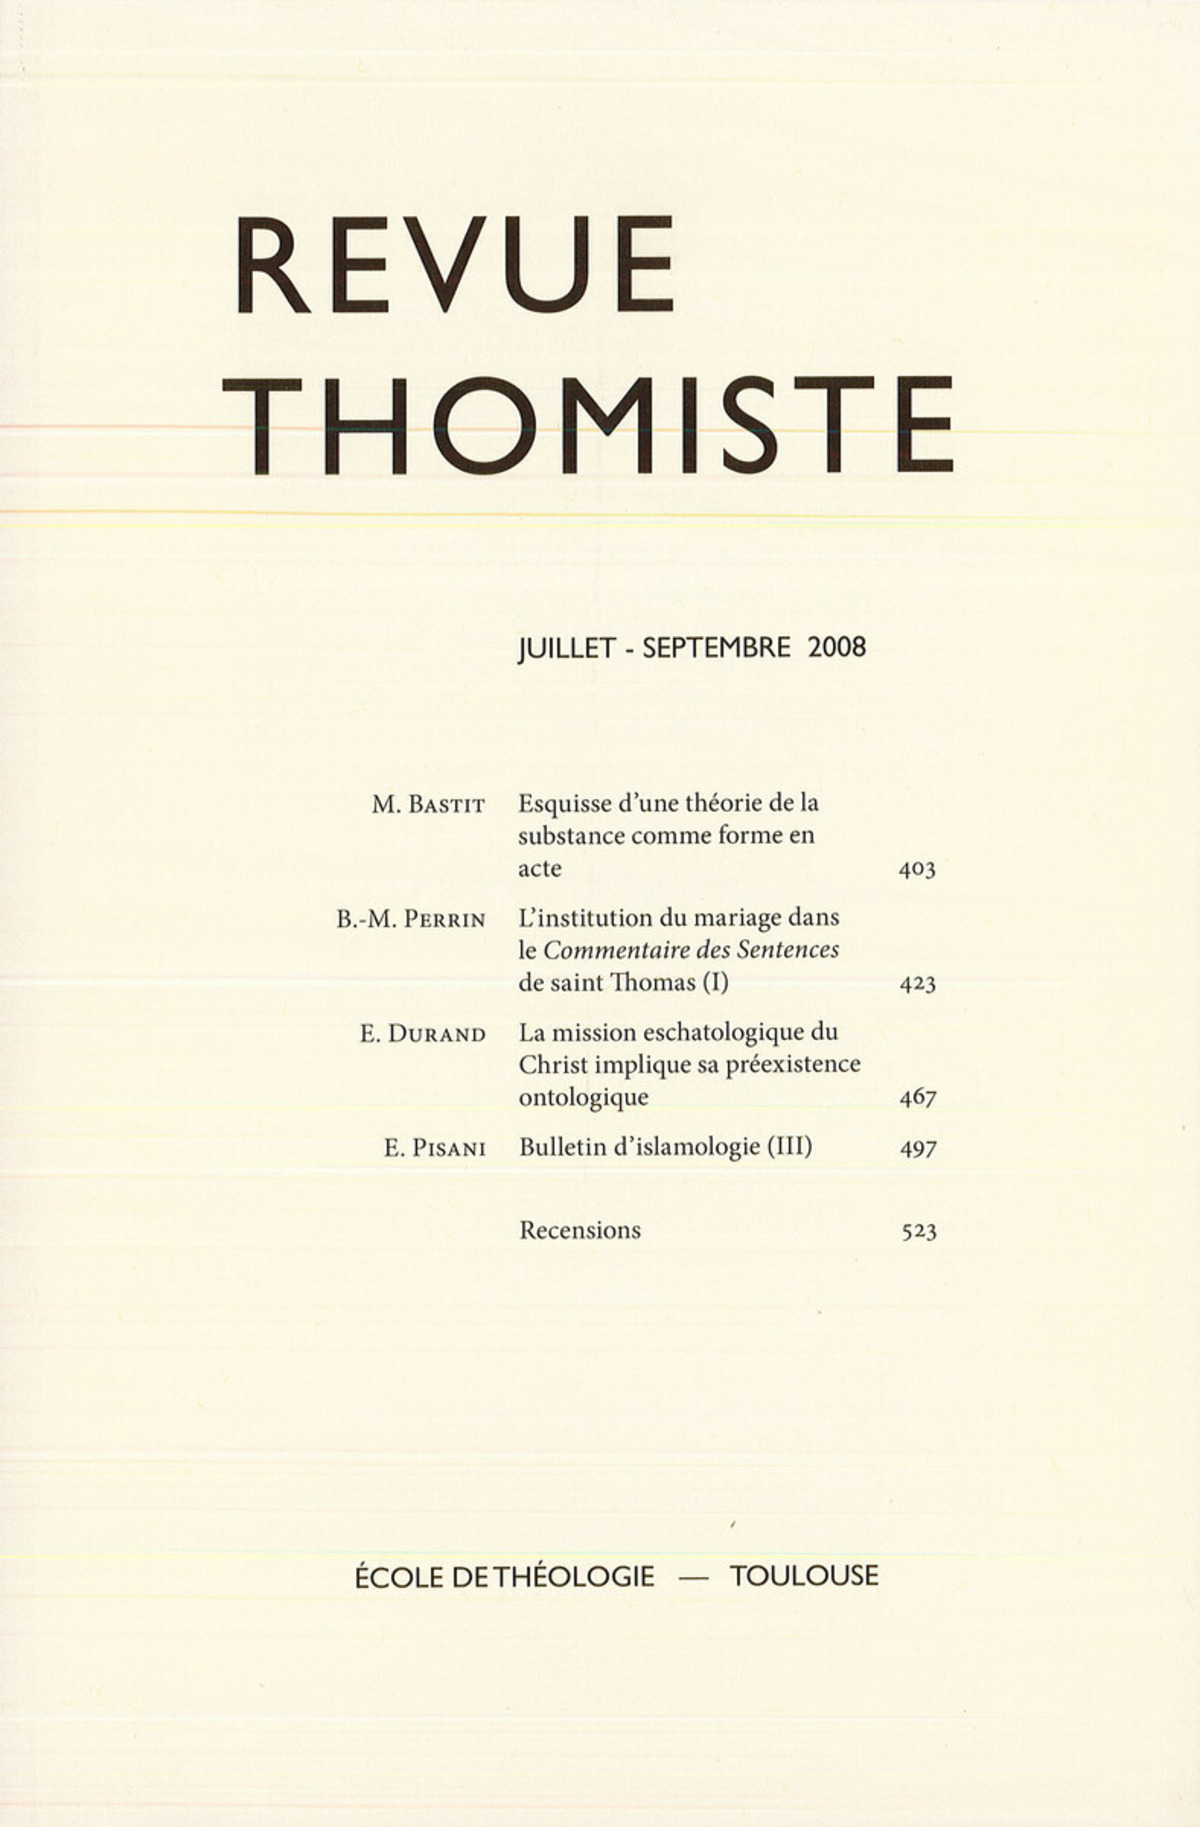 Revue thomiste - N°3/2008